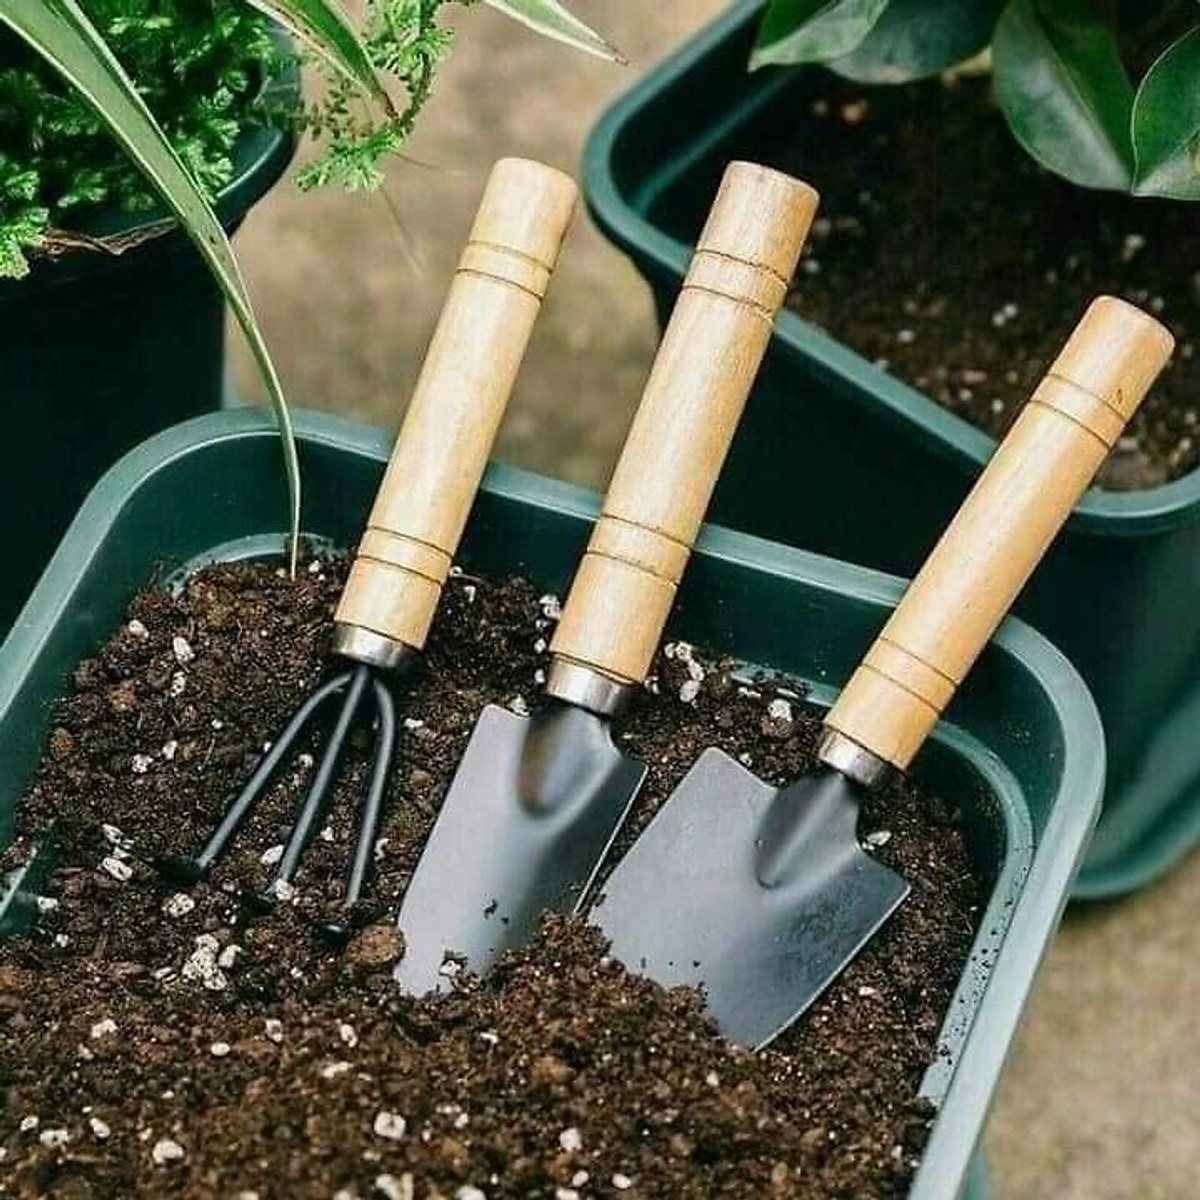 BỘ CUỐC XẺNG LÀM VƯỜN MINI SÉT 3 CHIẾC CỰC XINH - Dụng cụ làm vườn ...